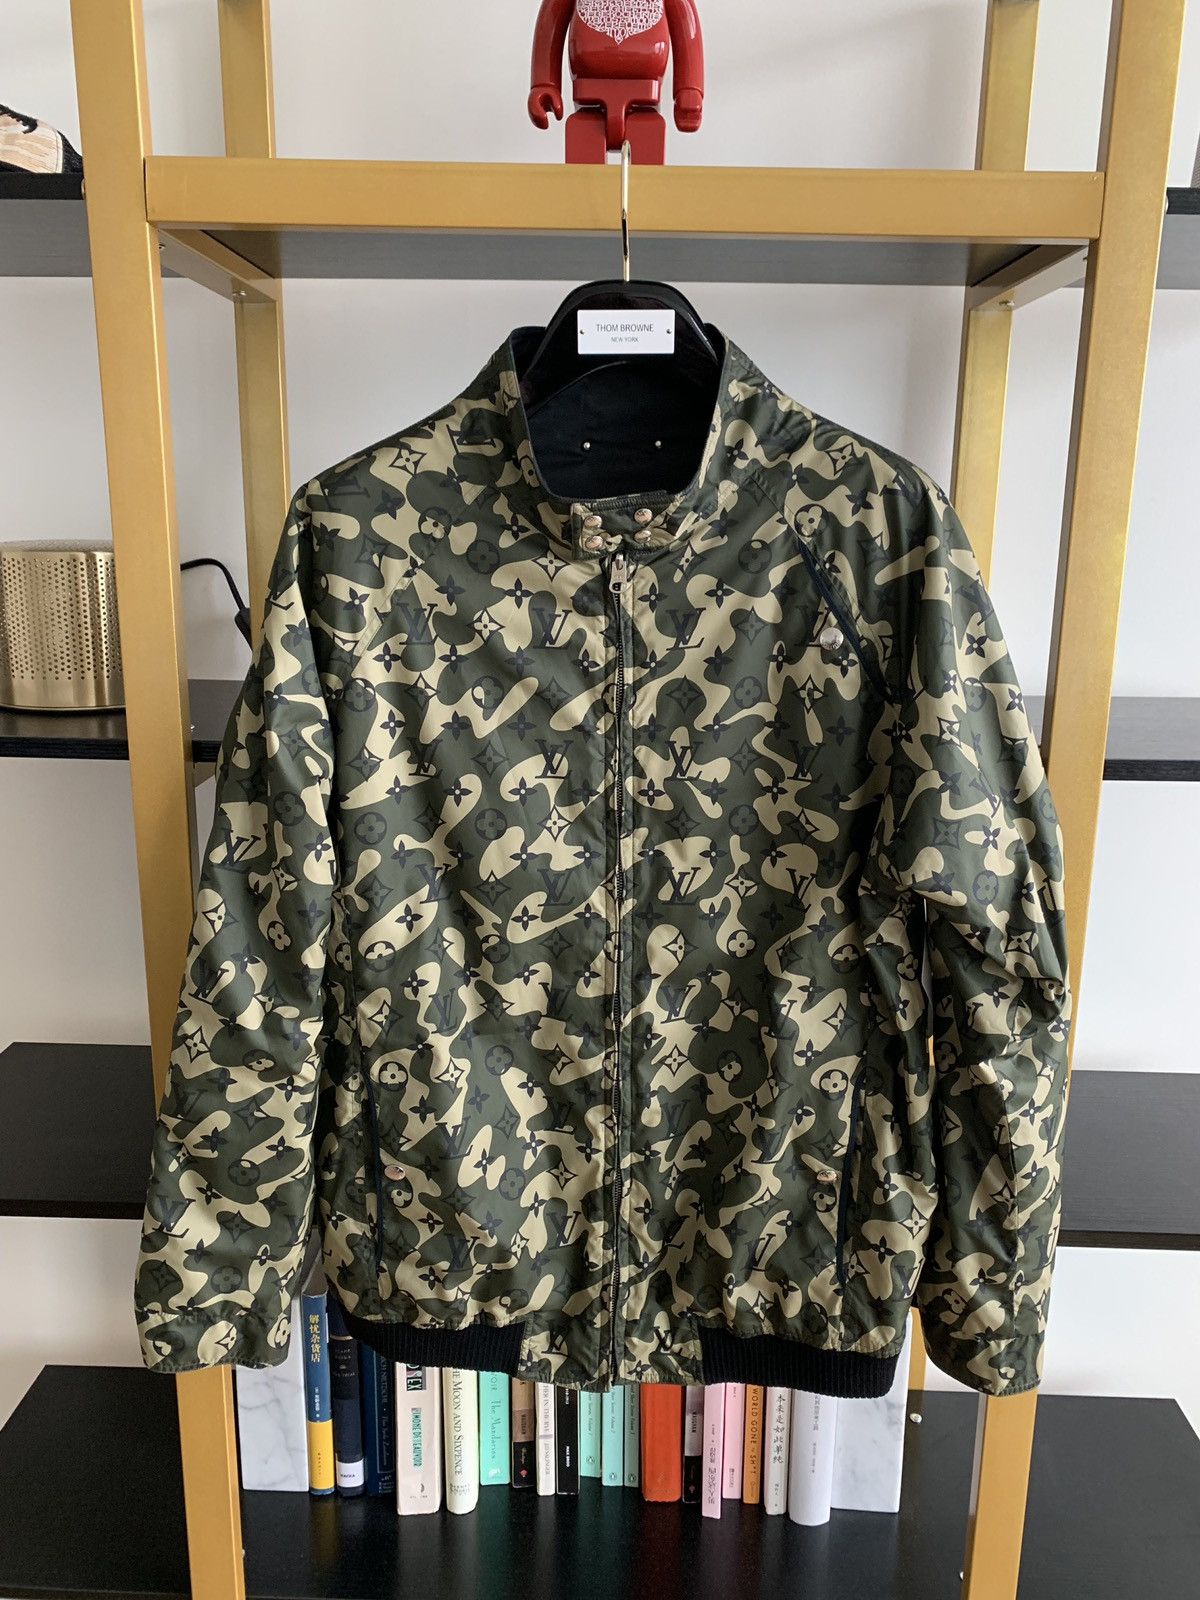 TAKASHI MURAKAMI LV Limited Edition Camouflage Jacket and -  Israel